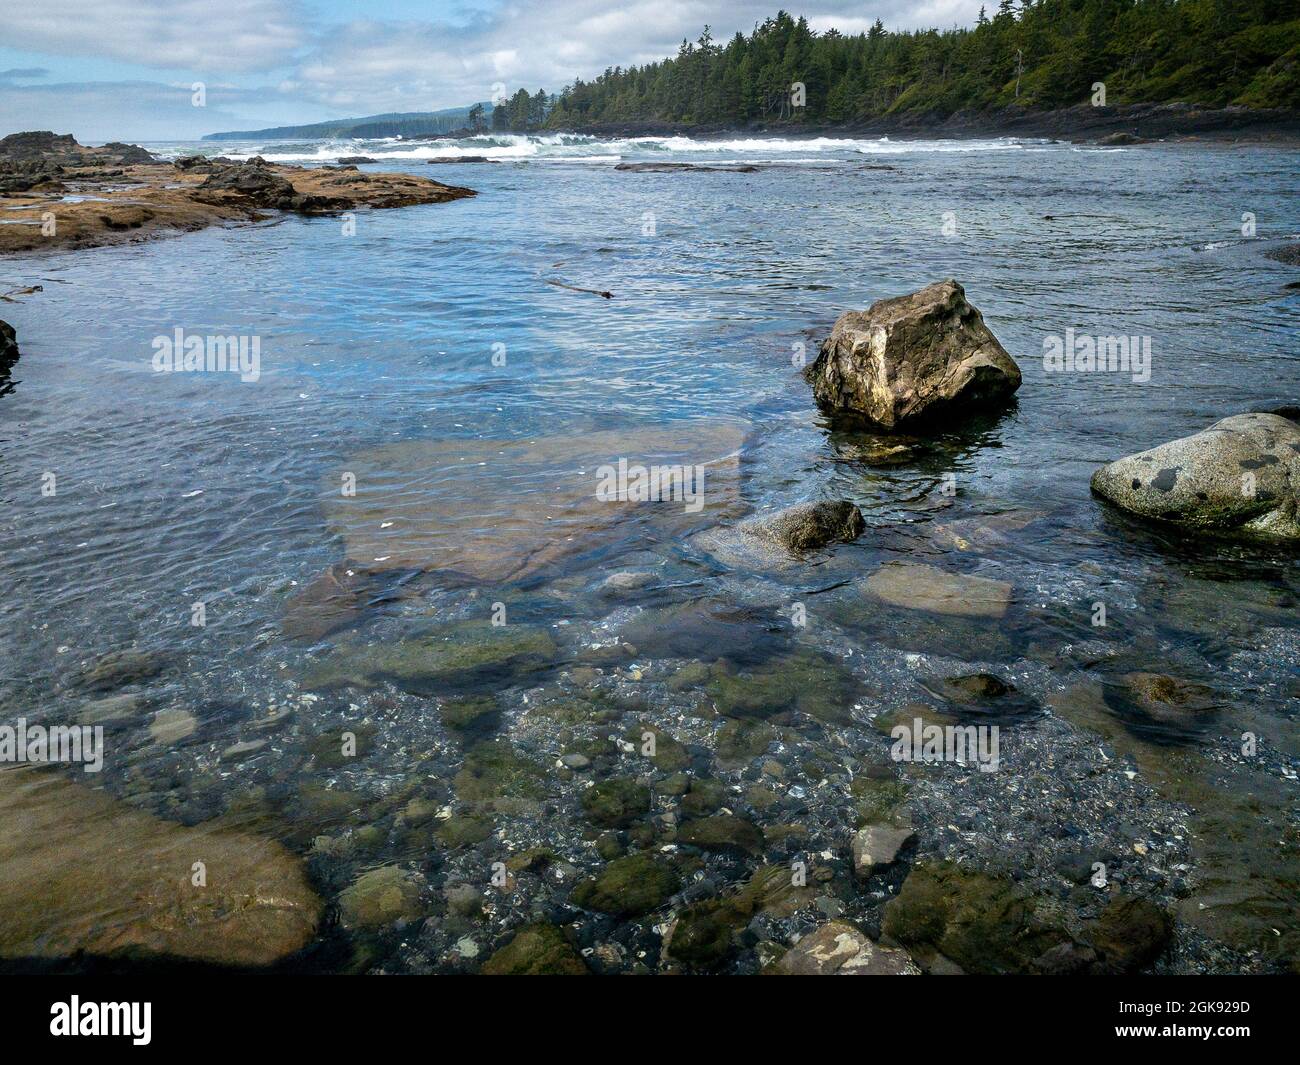 Marée basse et eau claire lors d'une journée d'été ensoleillée à Botanical Beach, dans le parc provincial Juan de Fuca, sur la côte ouest de l'île de Vancouver, C.-B., Canada. Banque D'Images